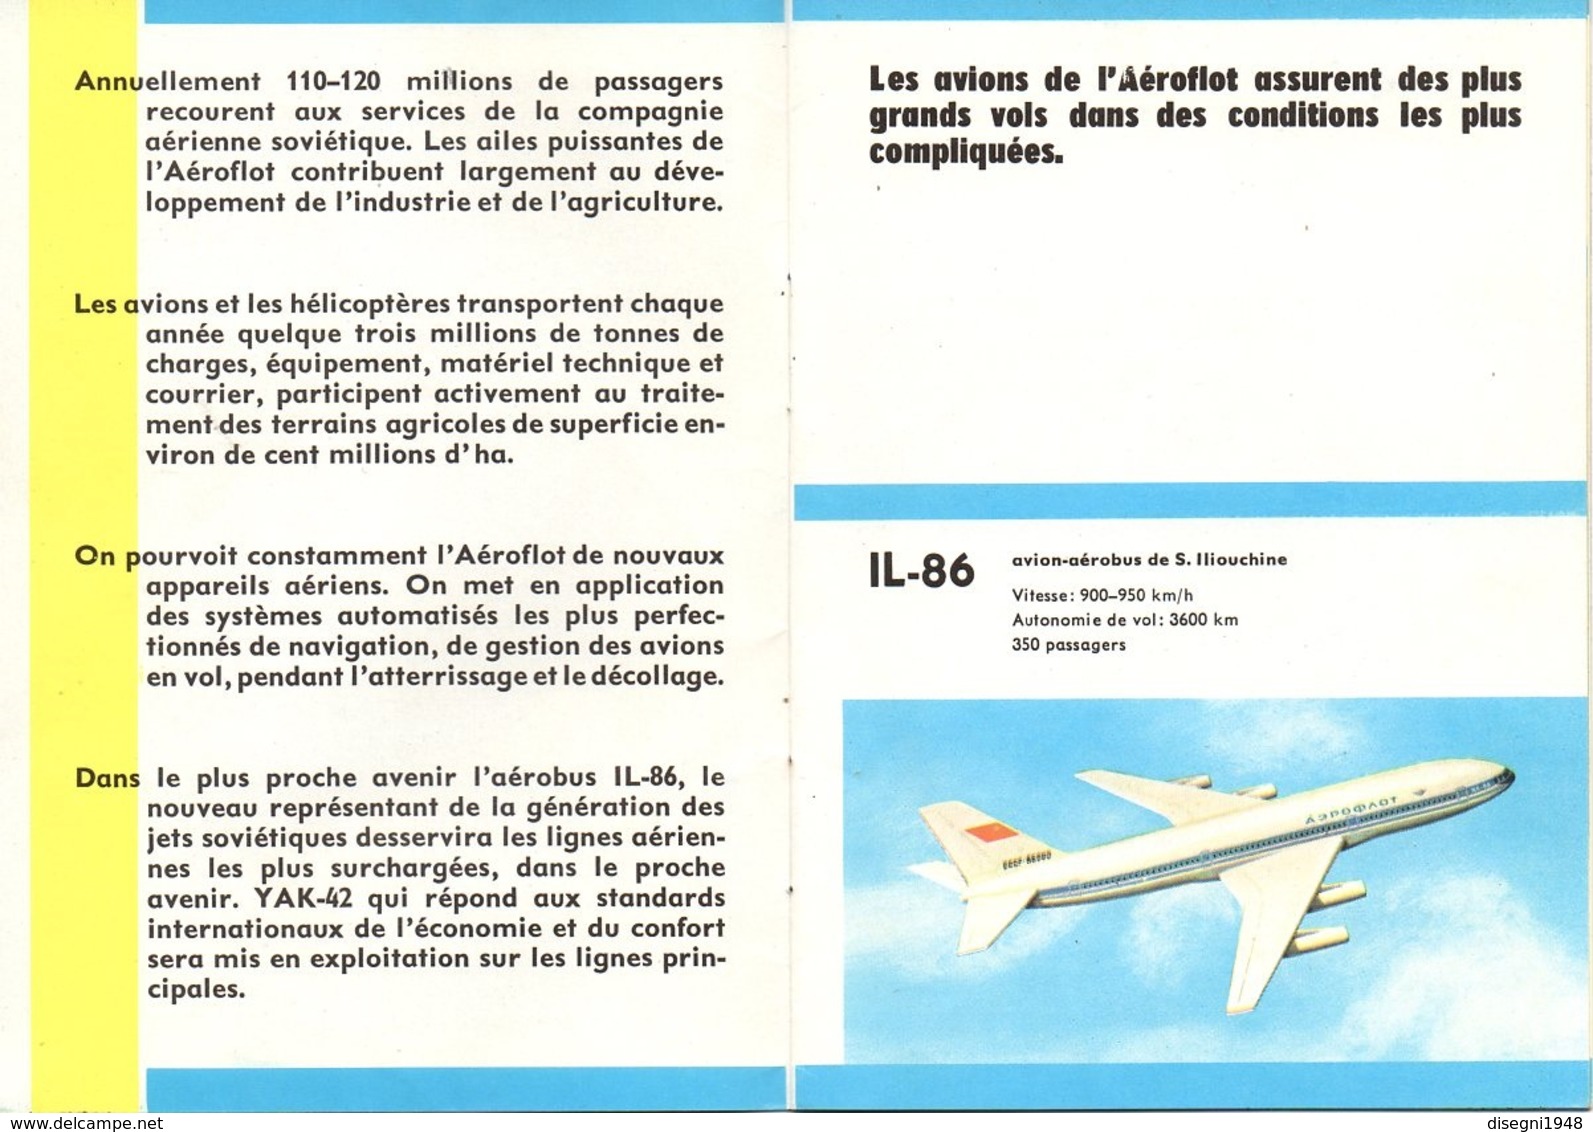 07537 "AU PASSAGER DES LIGNES AERIENNES INTERNATIONALES - AEROFLOT" OPUSCOLO ORIGINALE. - Advertisements